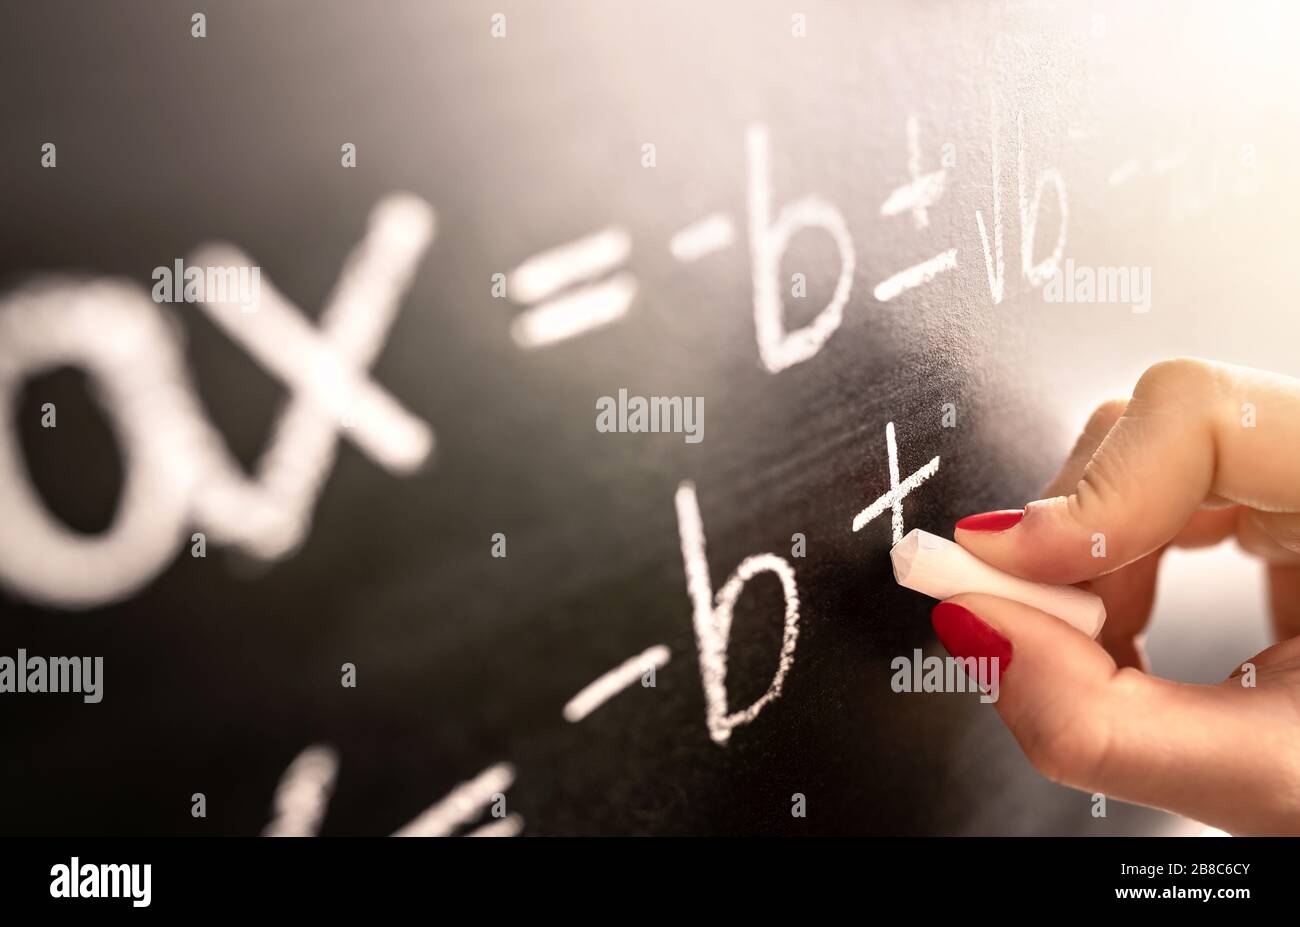 Mathematiklehrer schreibt Funktion, Gleichung oder Berechnung auf der Tafel im Schulunterricht. Berechnung des Studenten auf dem Schwarzen Brett. Stockfoto